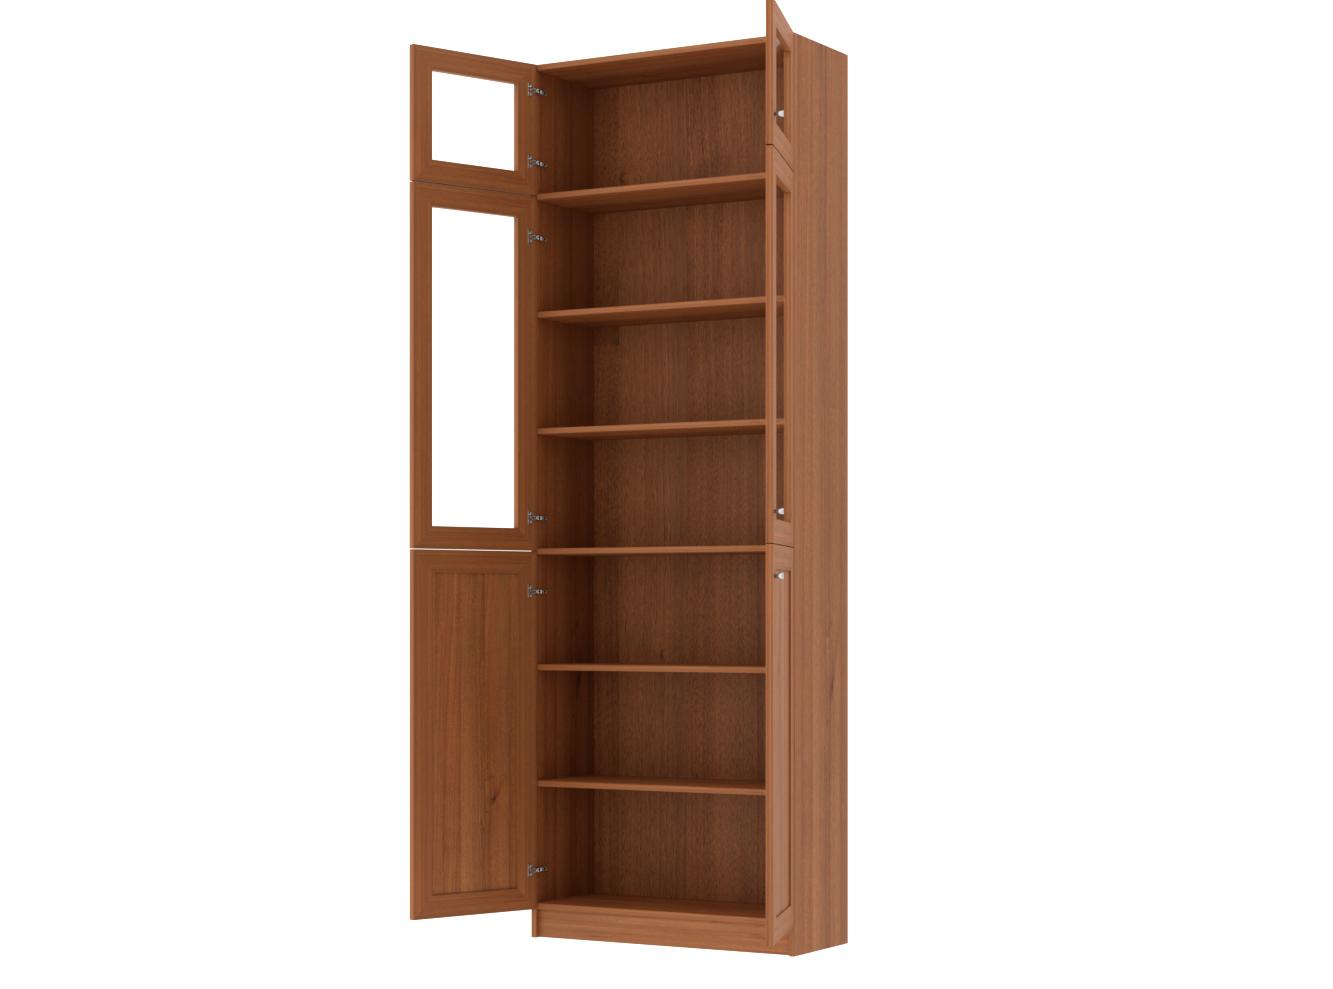  Книжный шкаф Билли 352 walnut guarneri ИКЕА (IKEA) изображение товара